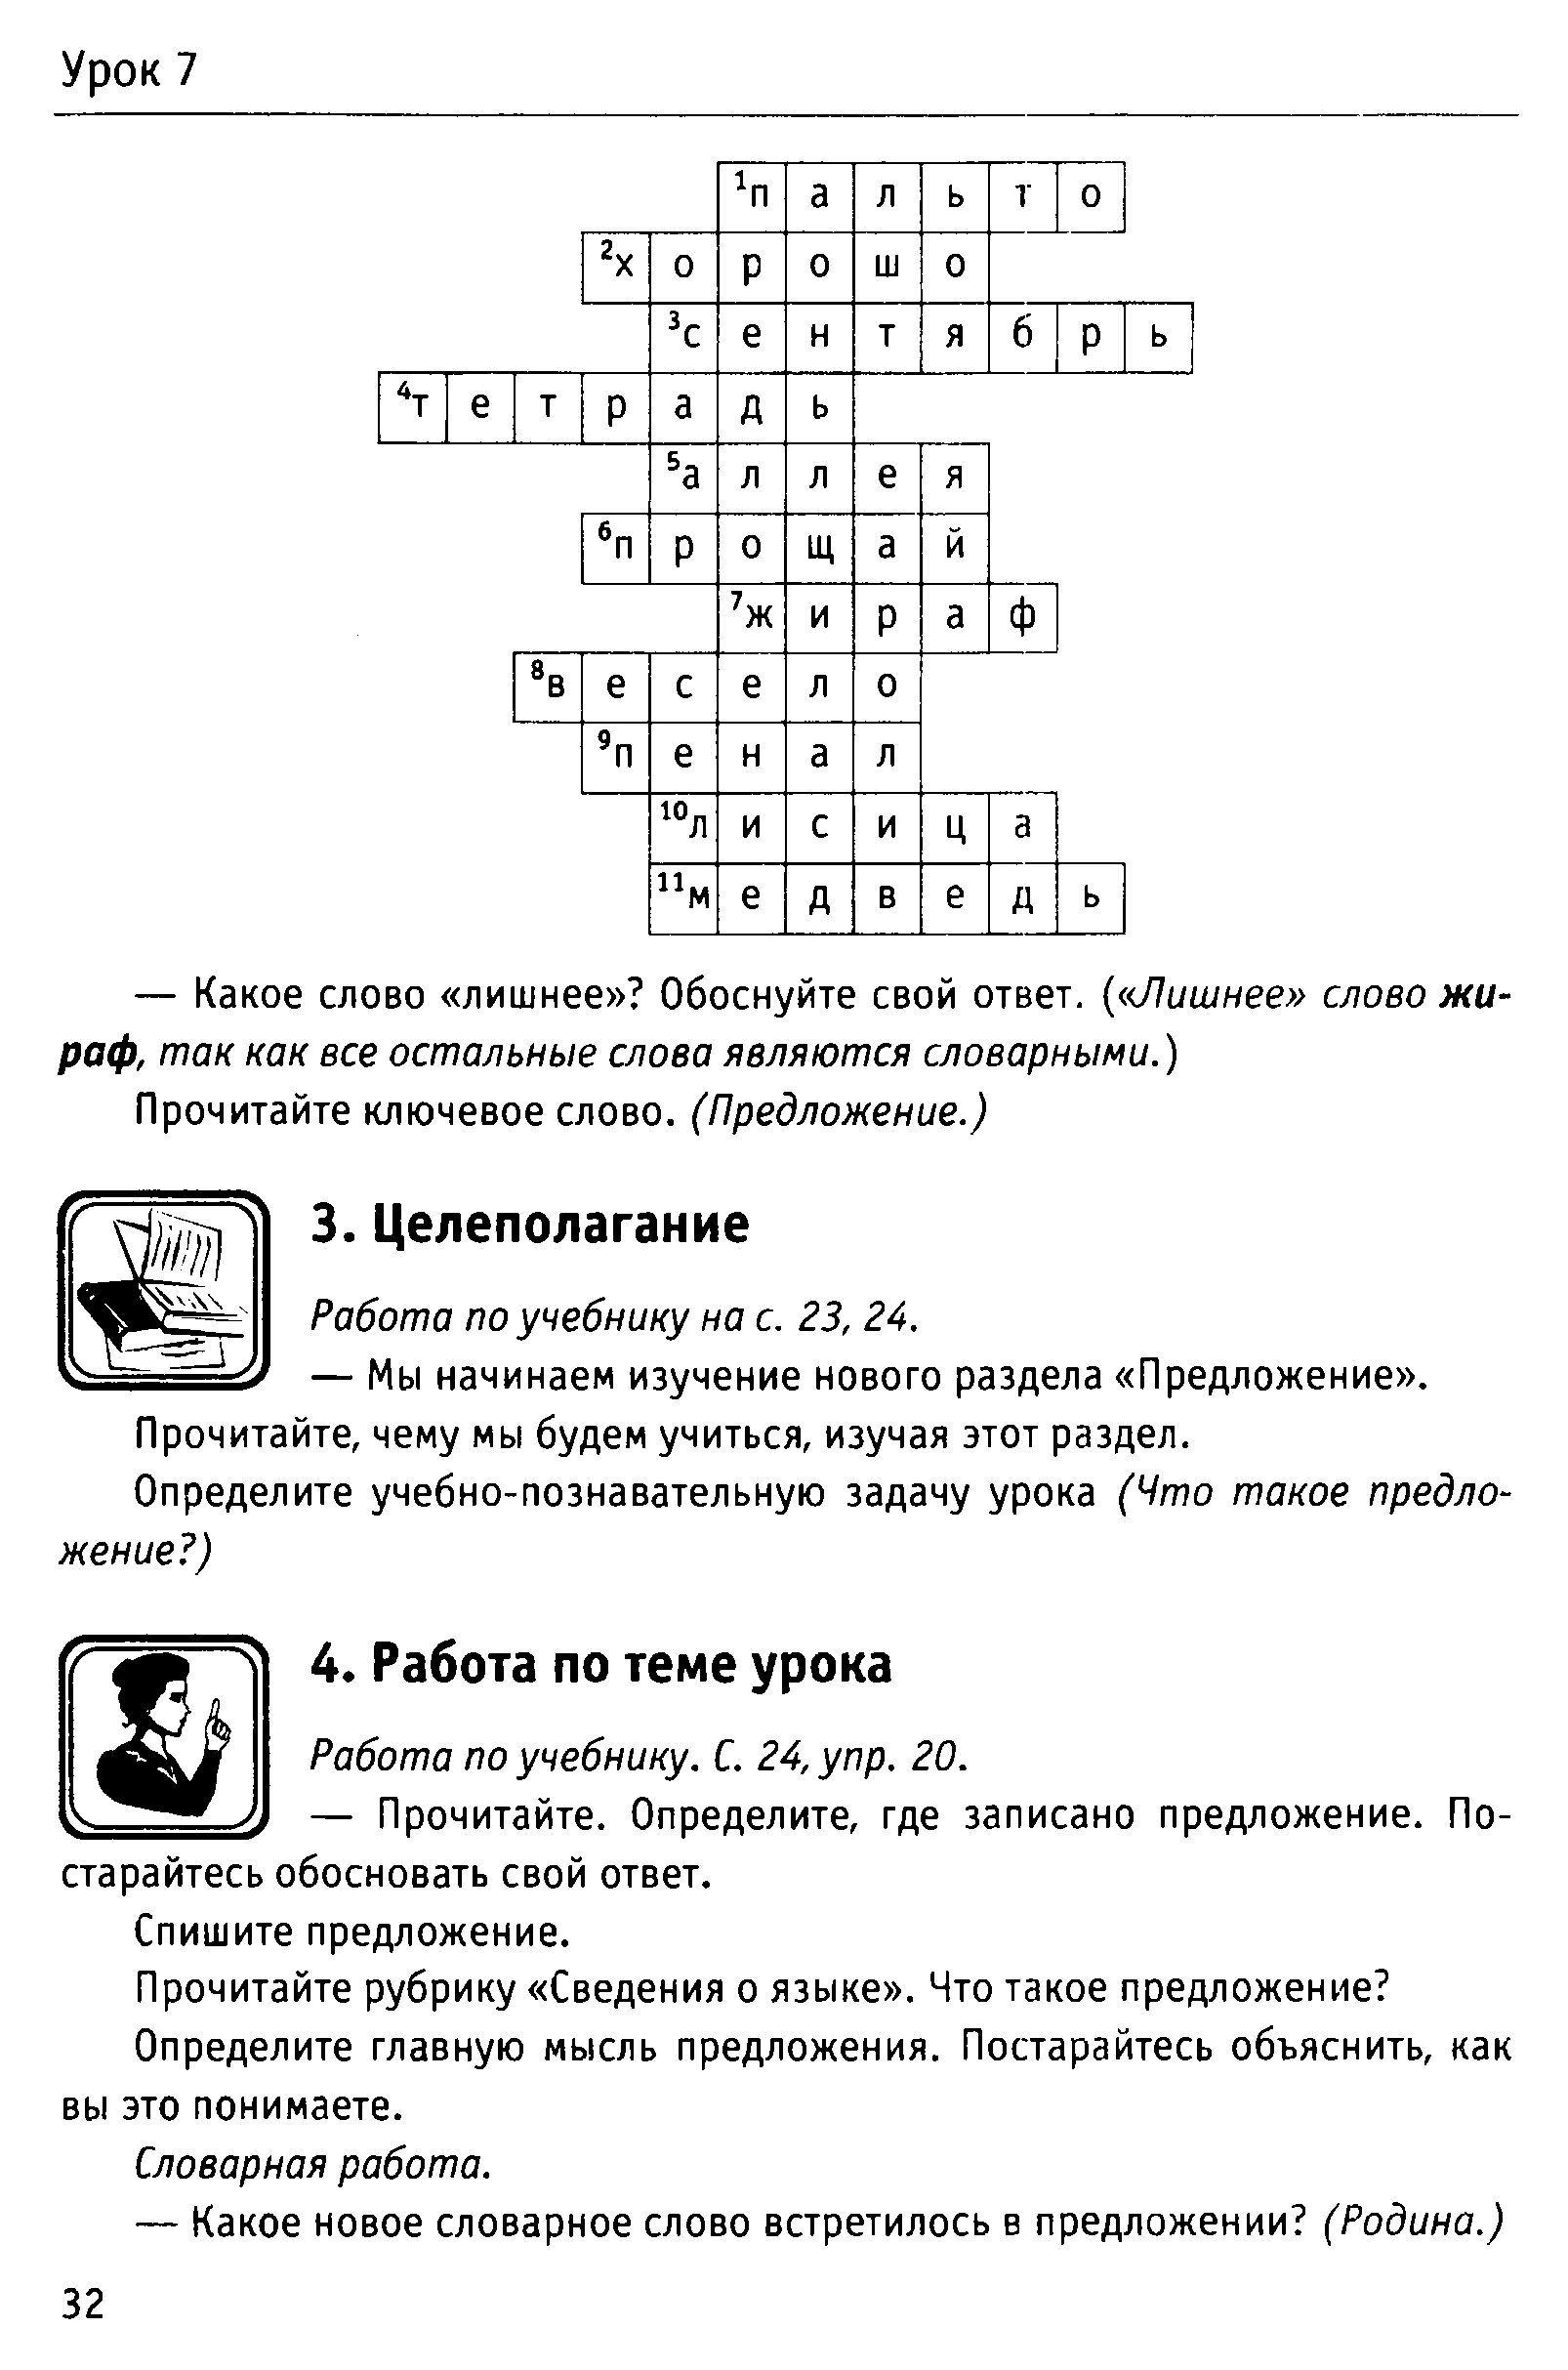 Урок русского языка на тему Что такое предложение?(2 класс)